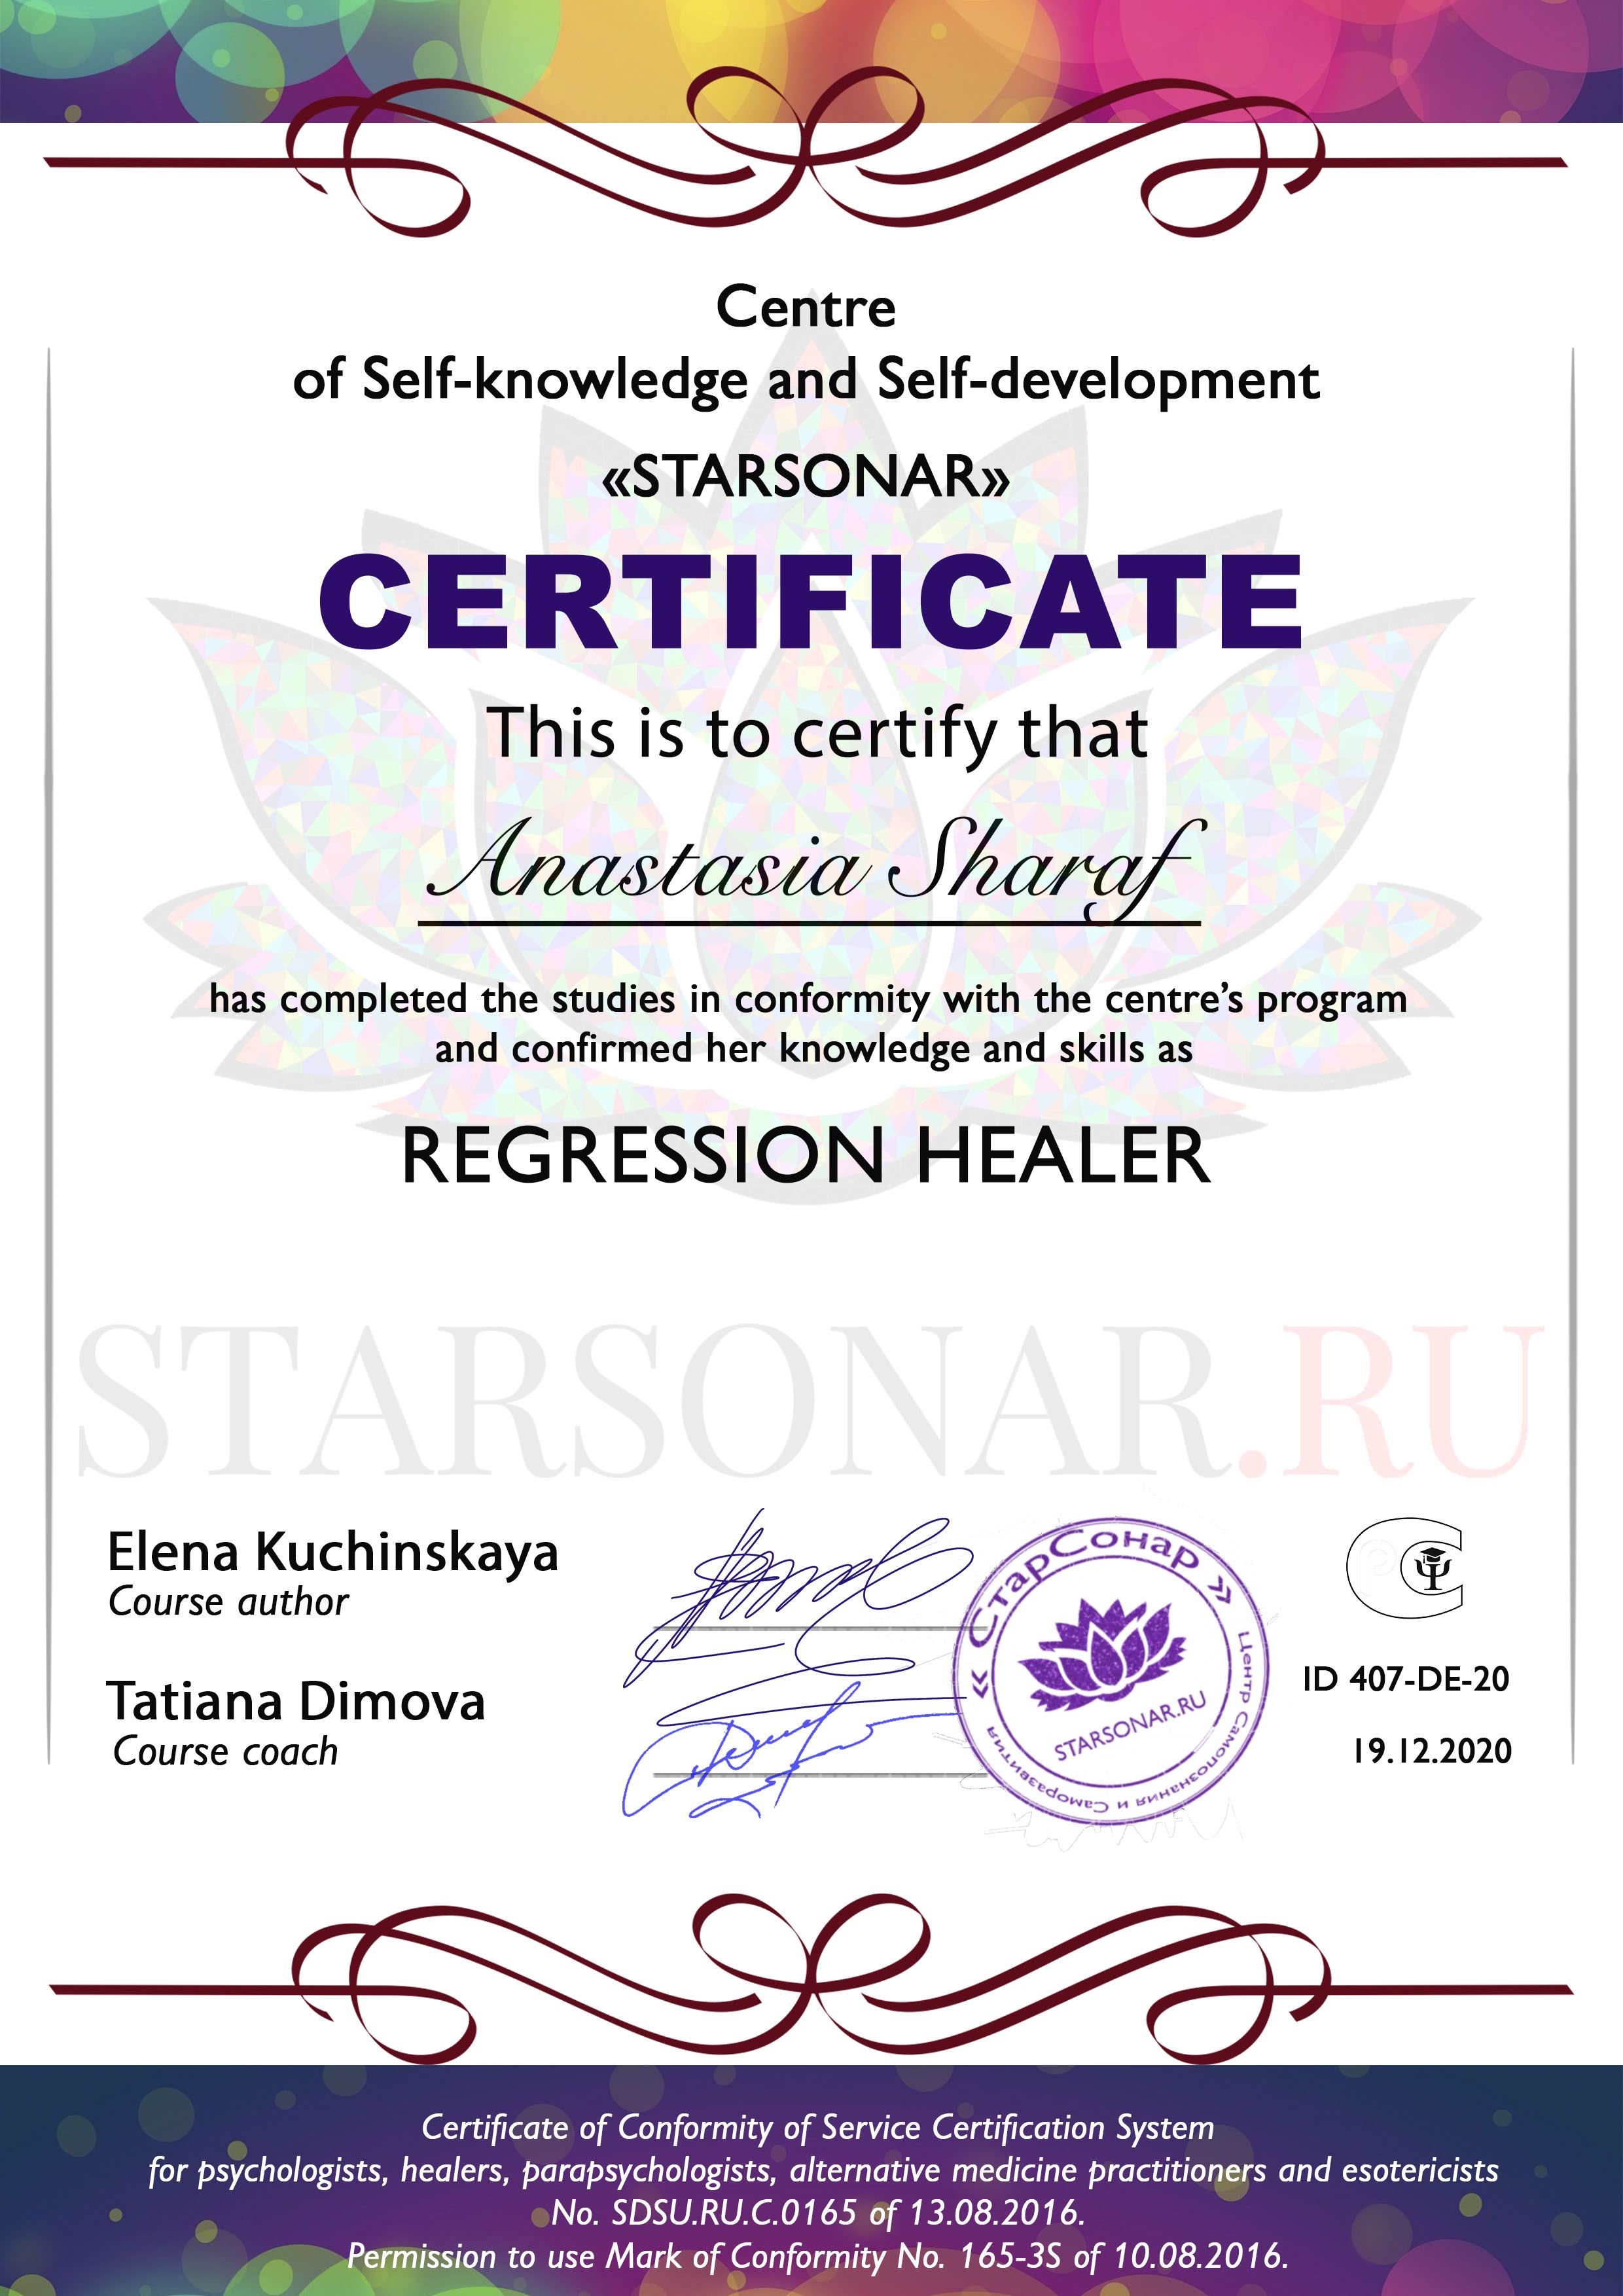 сертификат starsonarрегрессионного целительства